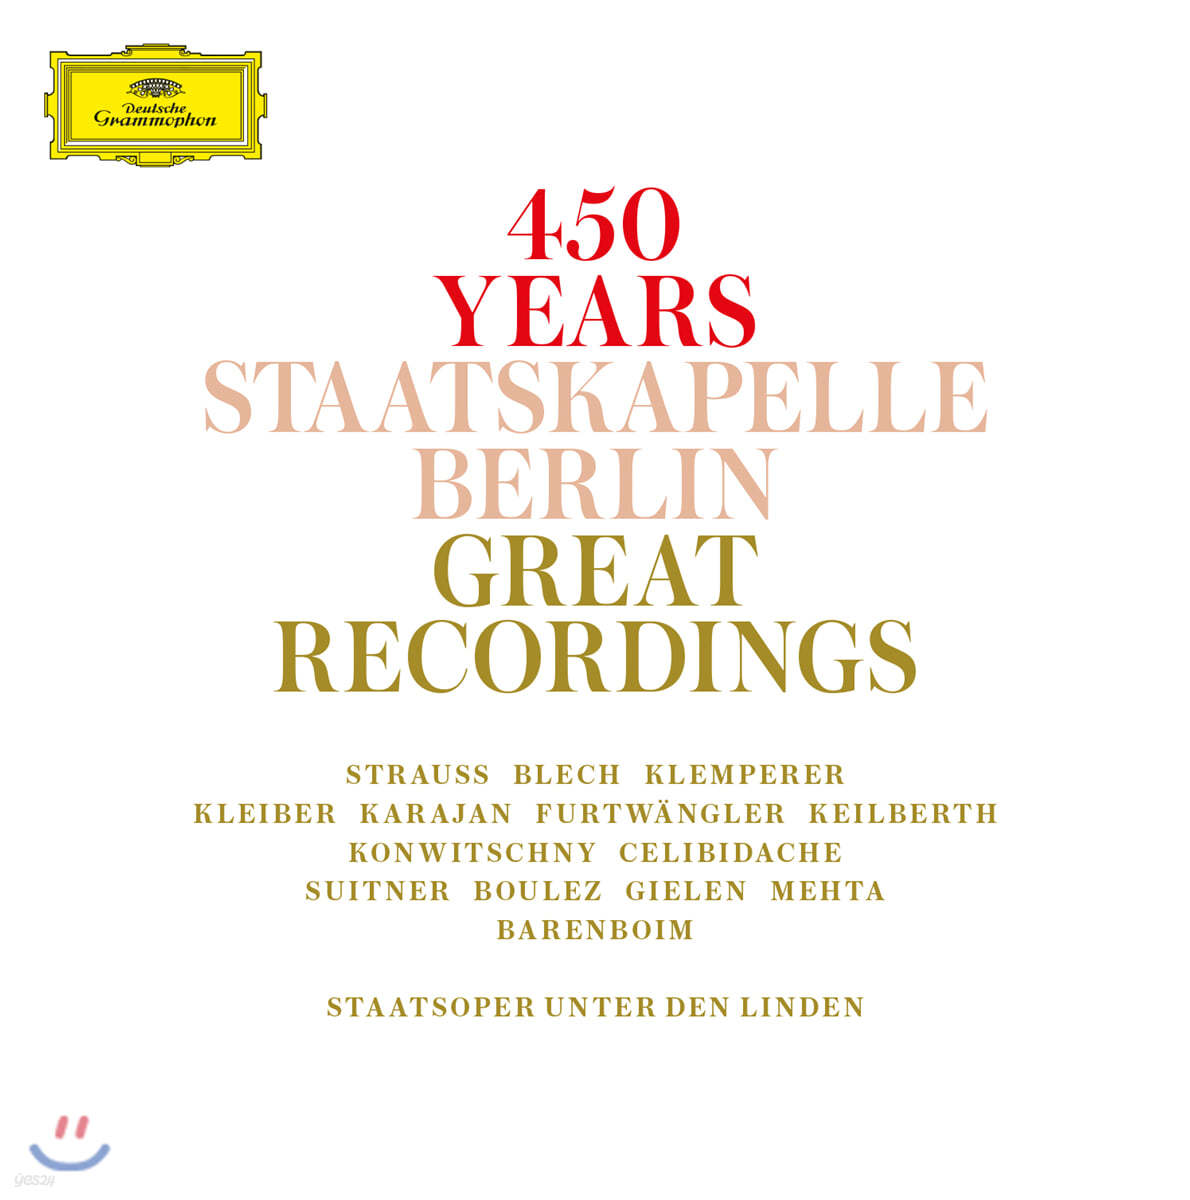 베를린 슈타츠카펠레 450년 기념 걸작 모음집 (450 Years Staatskapelle Berlin Great Recordings)